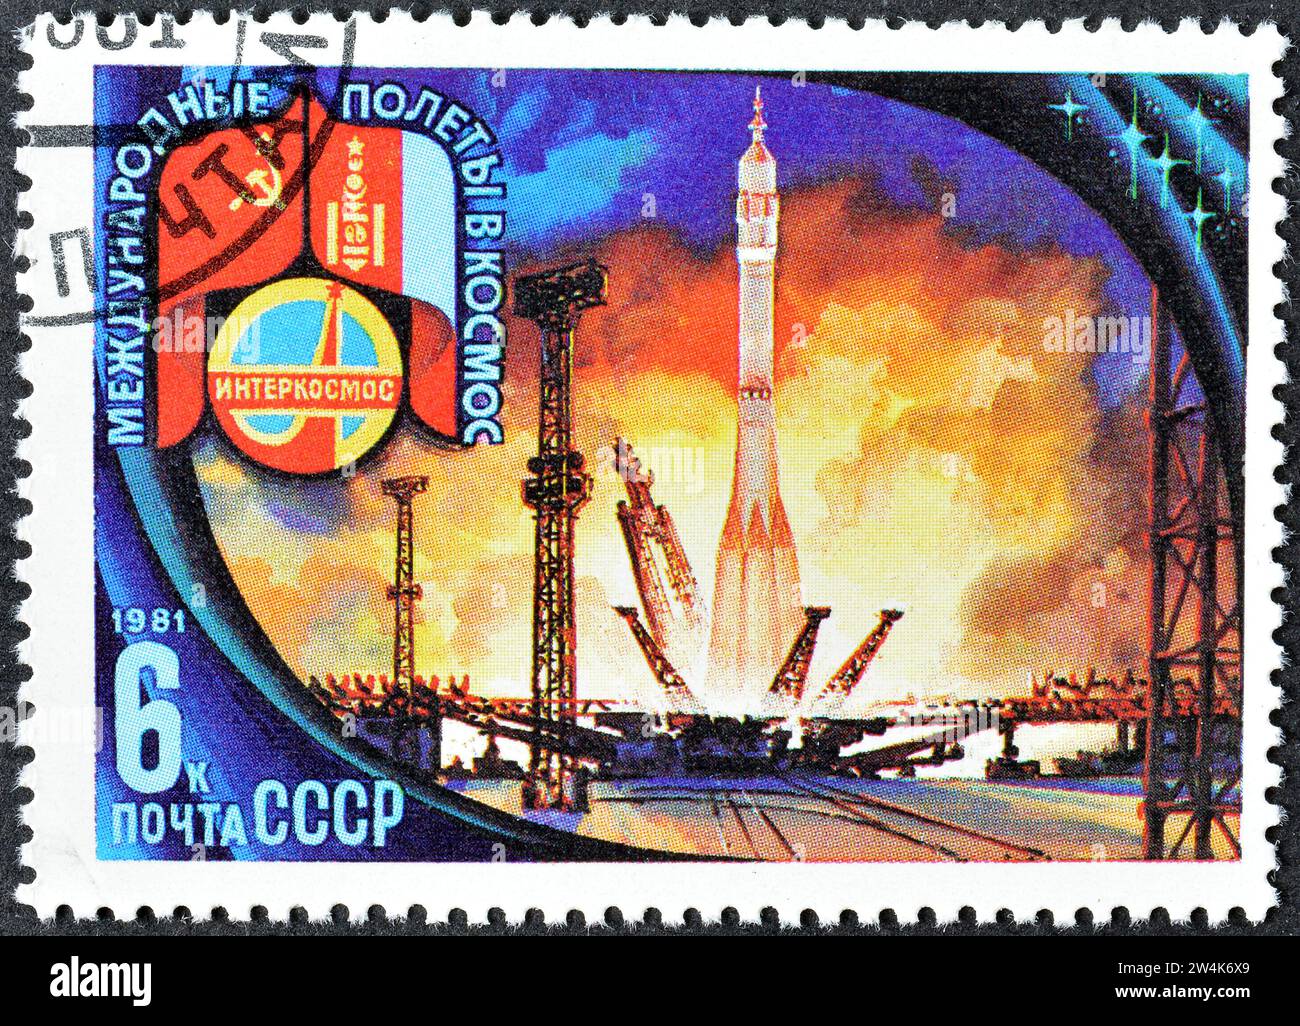 Timbre-poste annulé imprimé par l'Union soviétique, qui montre le lancement de 'Soyouz-39' depuis la base de Baïkonour, vol spatial soviéto-mongol, vers 1981. Banque D'Images